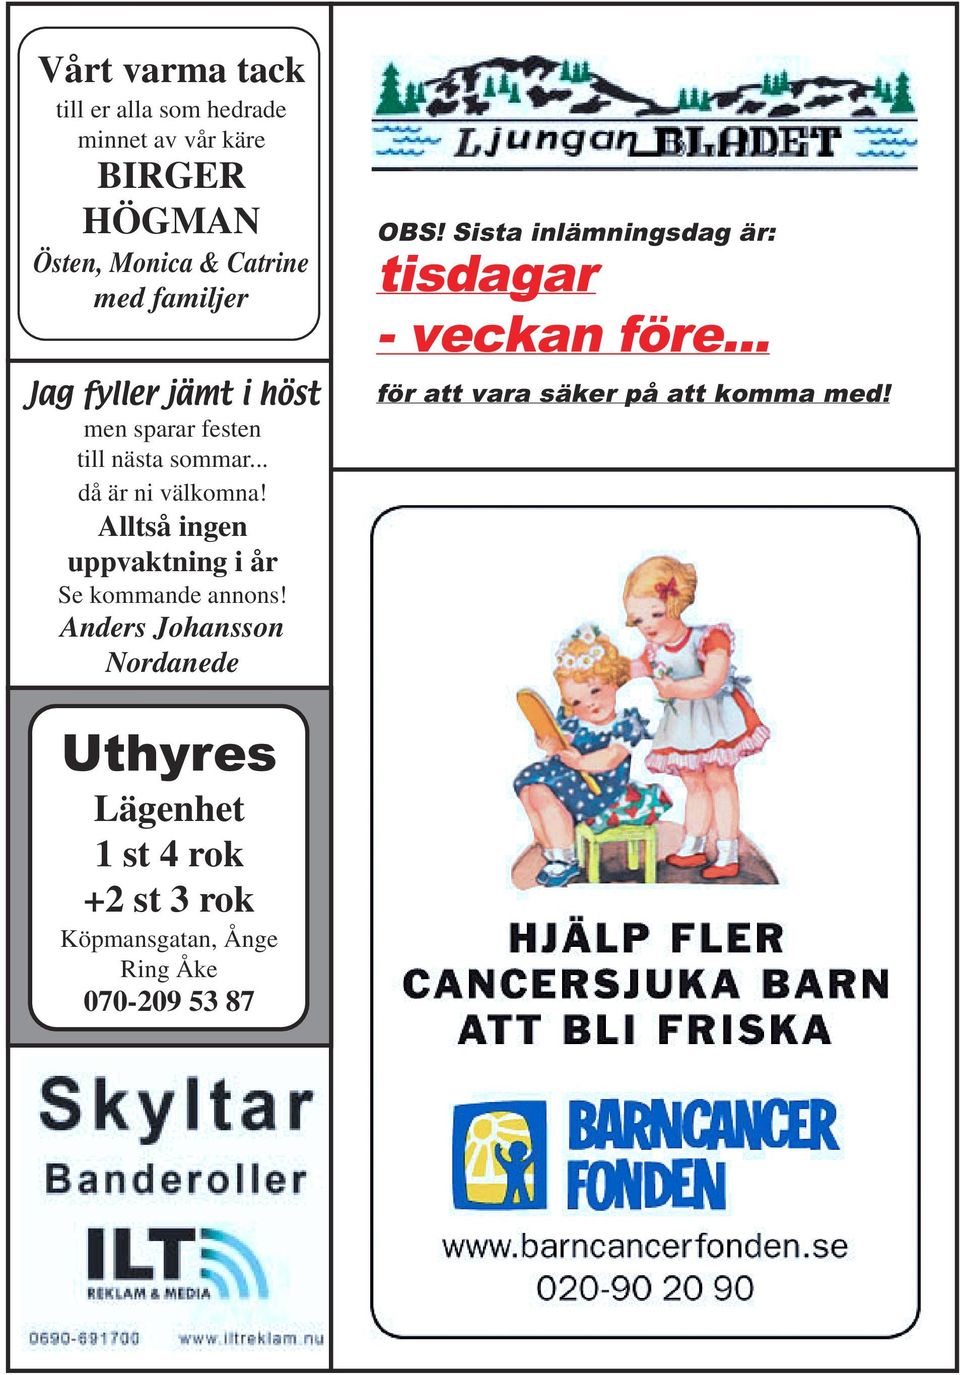 Alltså ingen uppvaktning i år Se kommande annons! Anders Johansson Nordanede OBS!